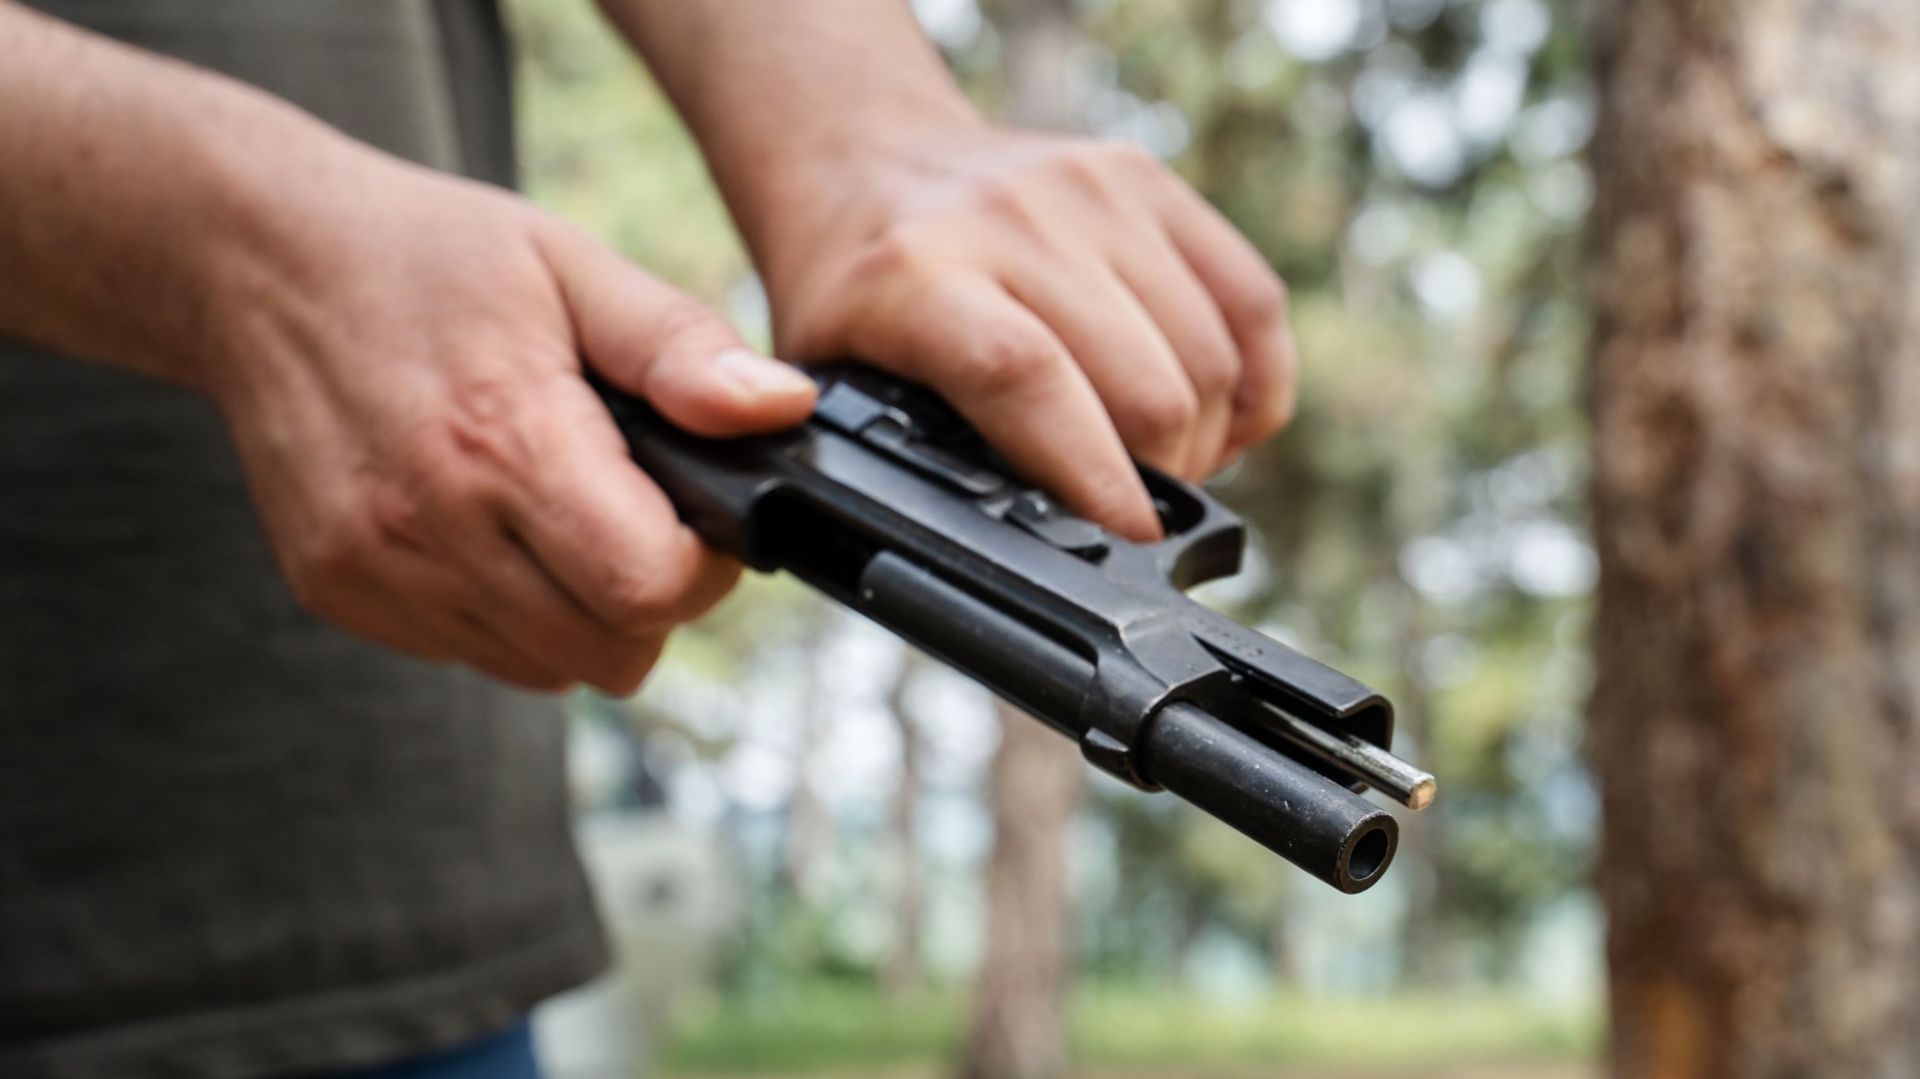 Selon l’organisation Small arms survey, il y aurait en moyenne 120 armes à feu pour 100 habitants aux Etats-Unis.